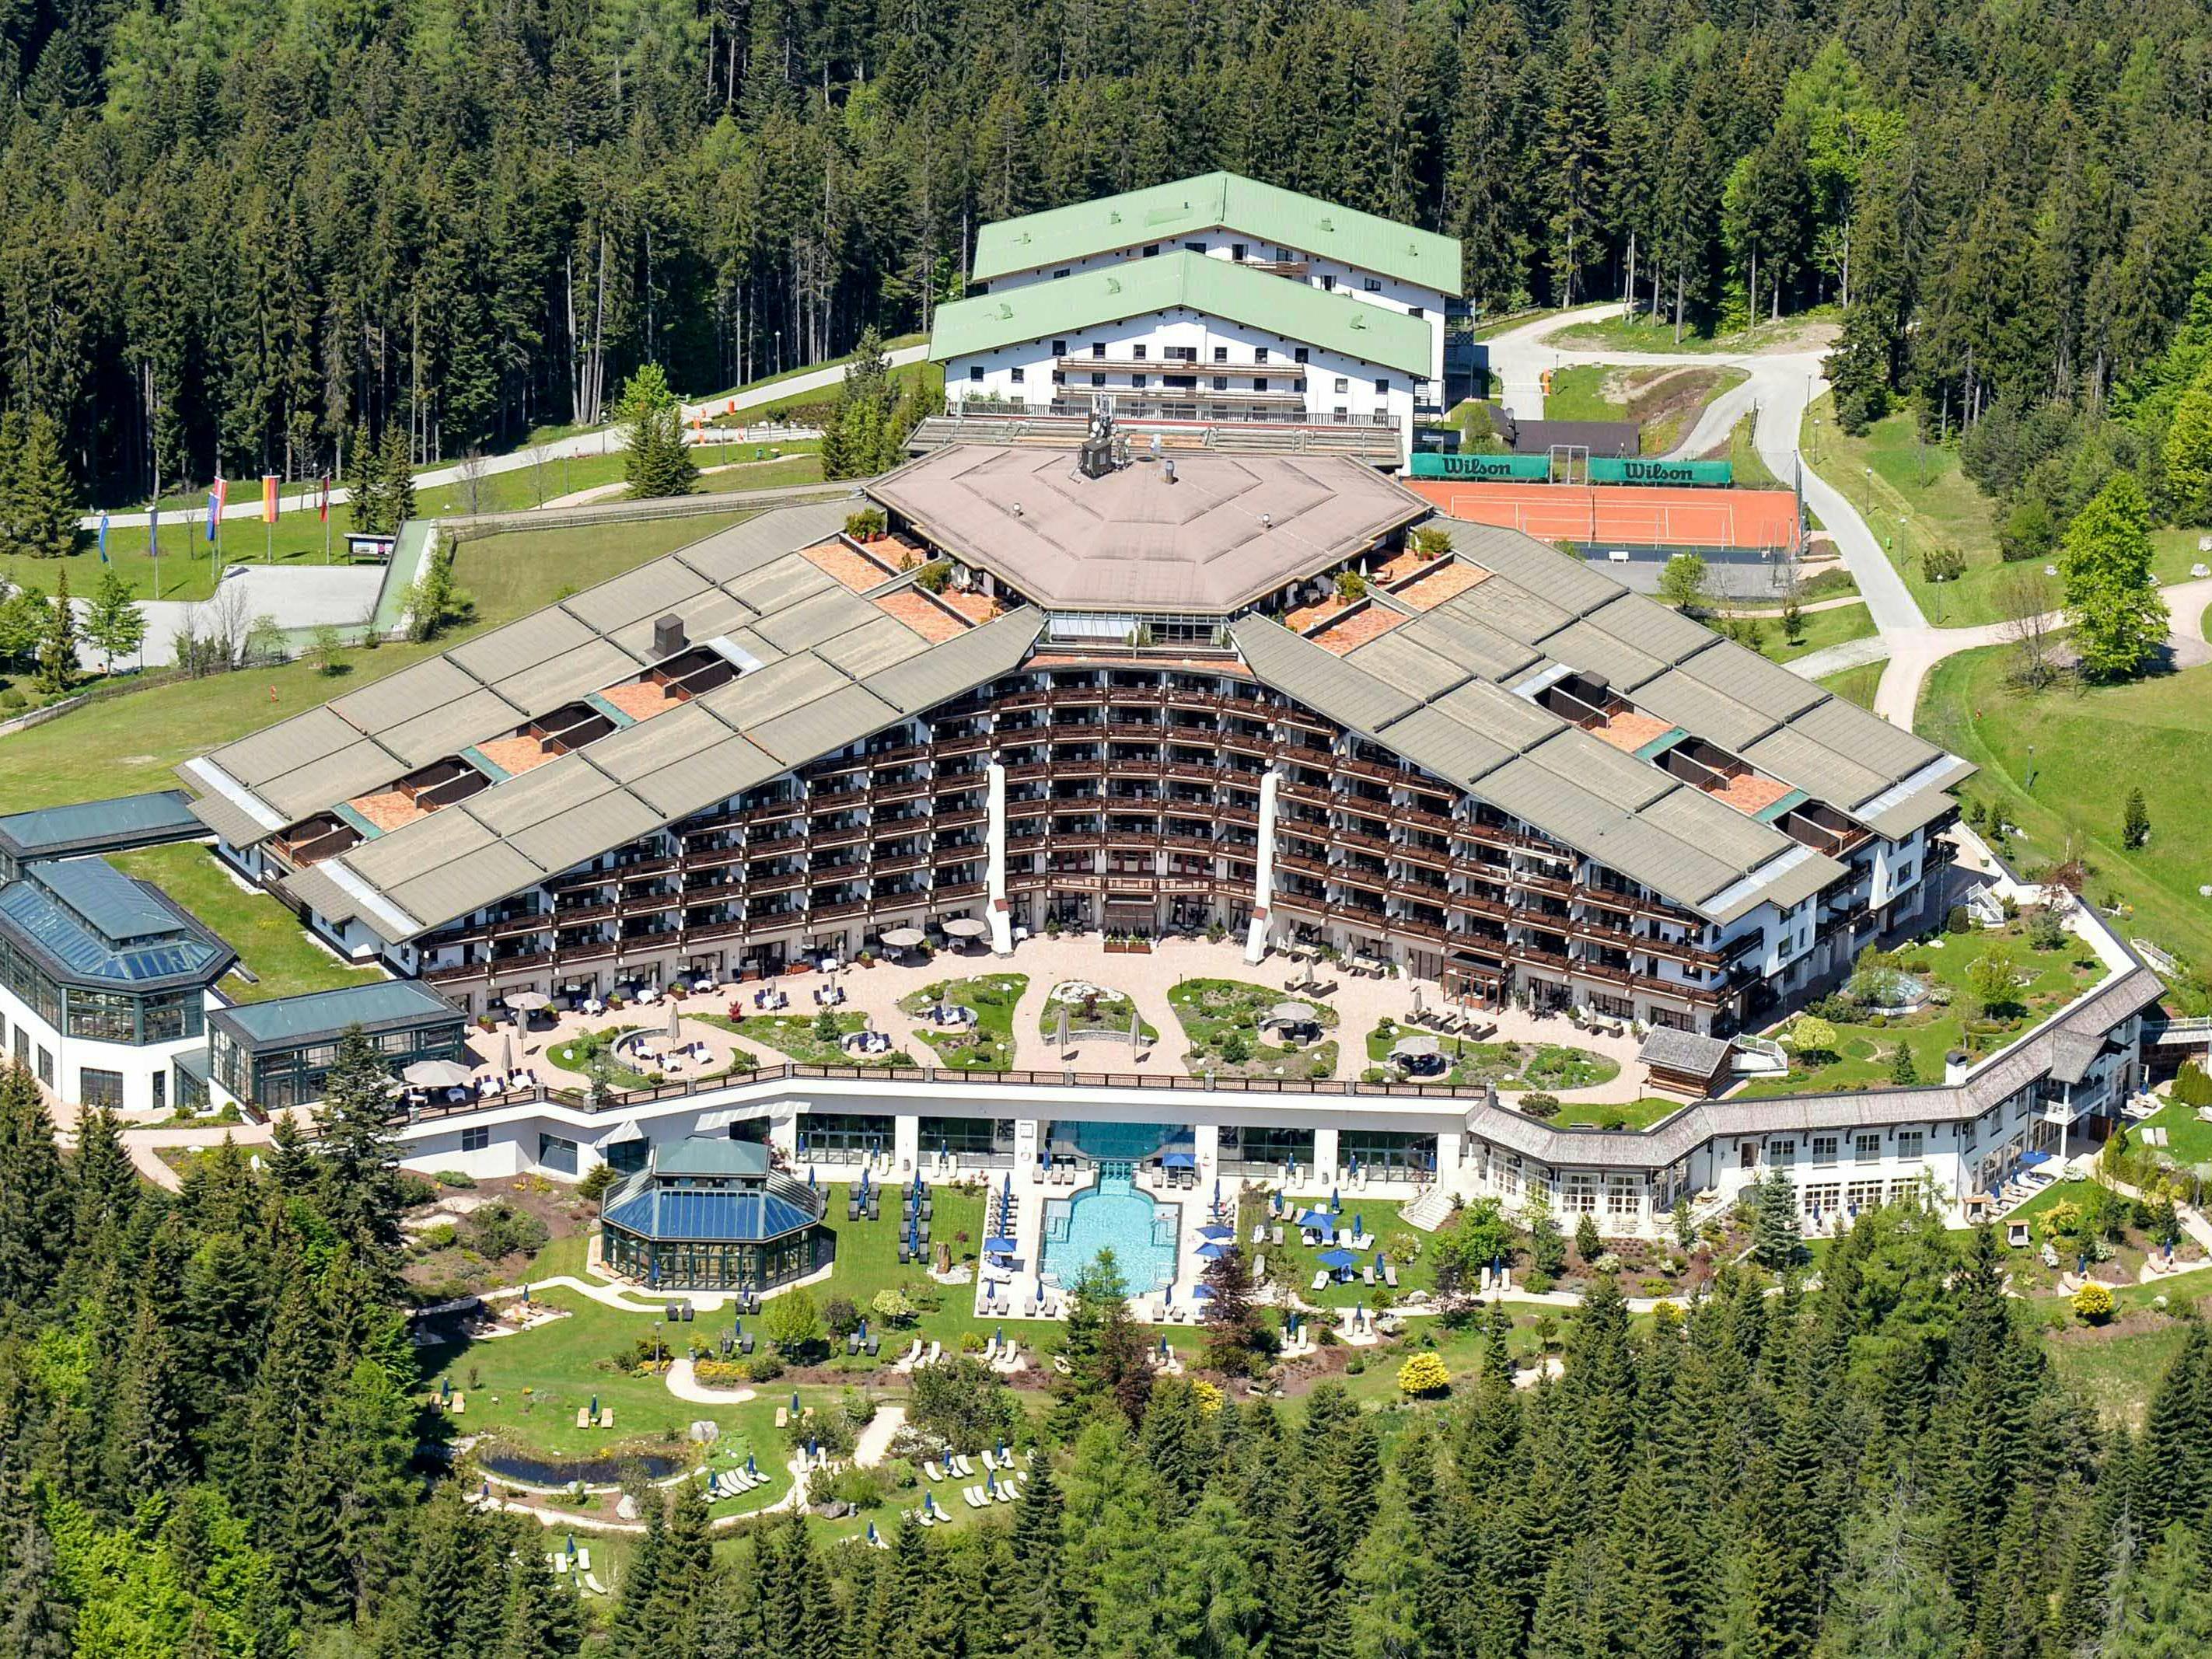 Tagunsort der 63. Bilderberg-Konferenz: das Hotel Interalpen Tyrol in Telfs.